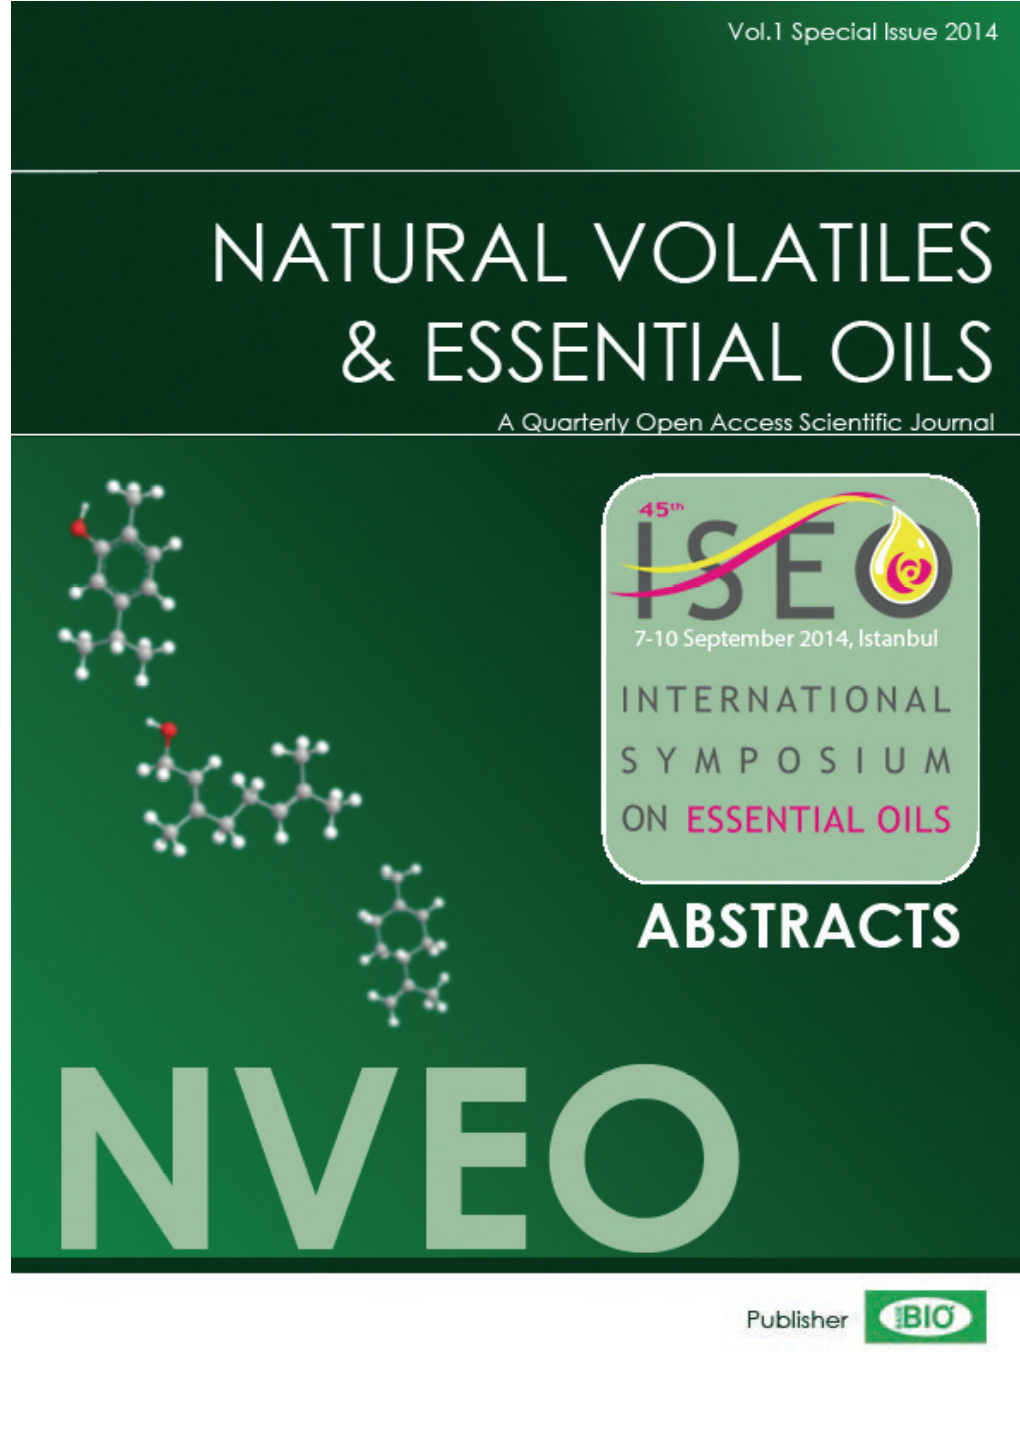 Natural Volatiles & Essential Oils